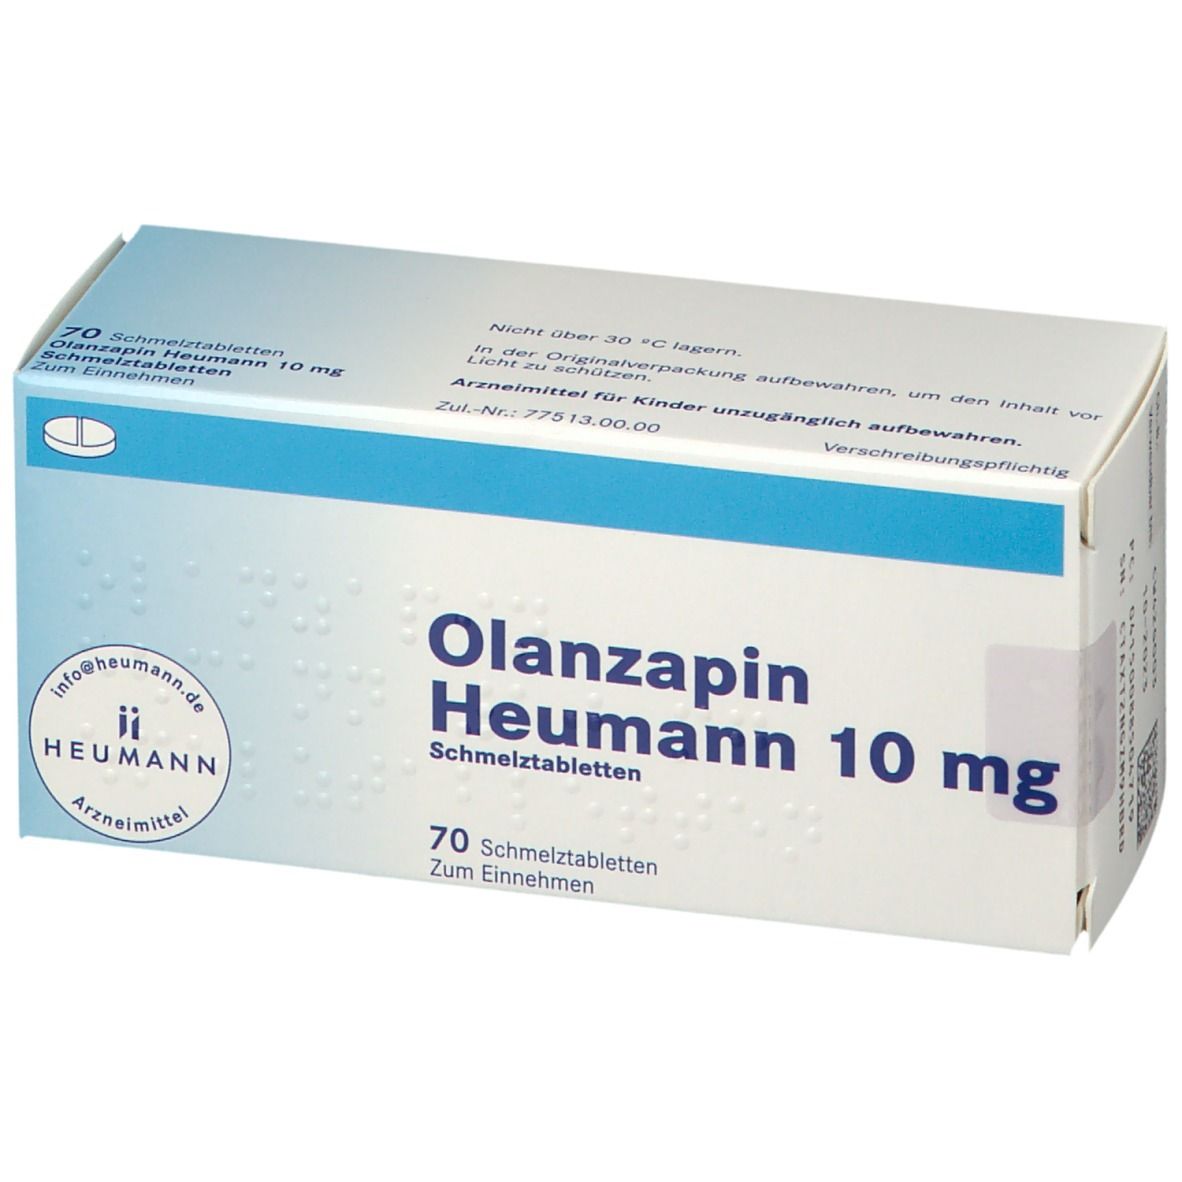 Olanzapin Heumann 10 mg Schmelztabletten